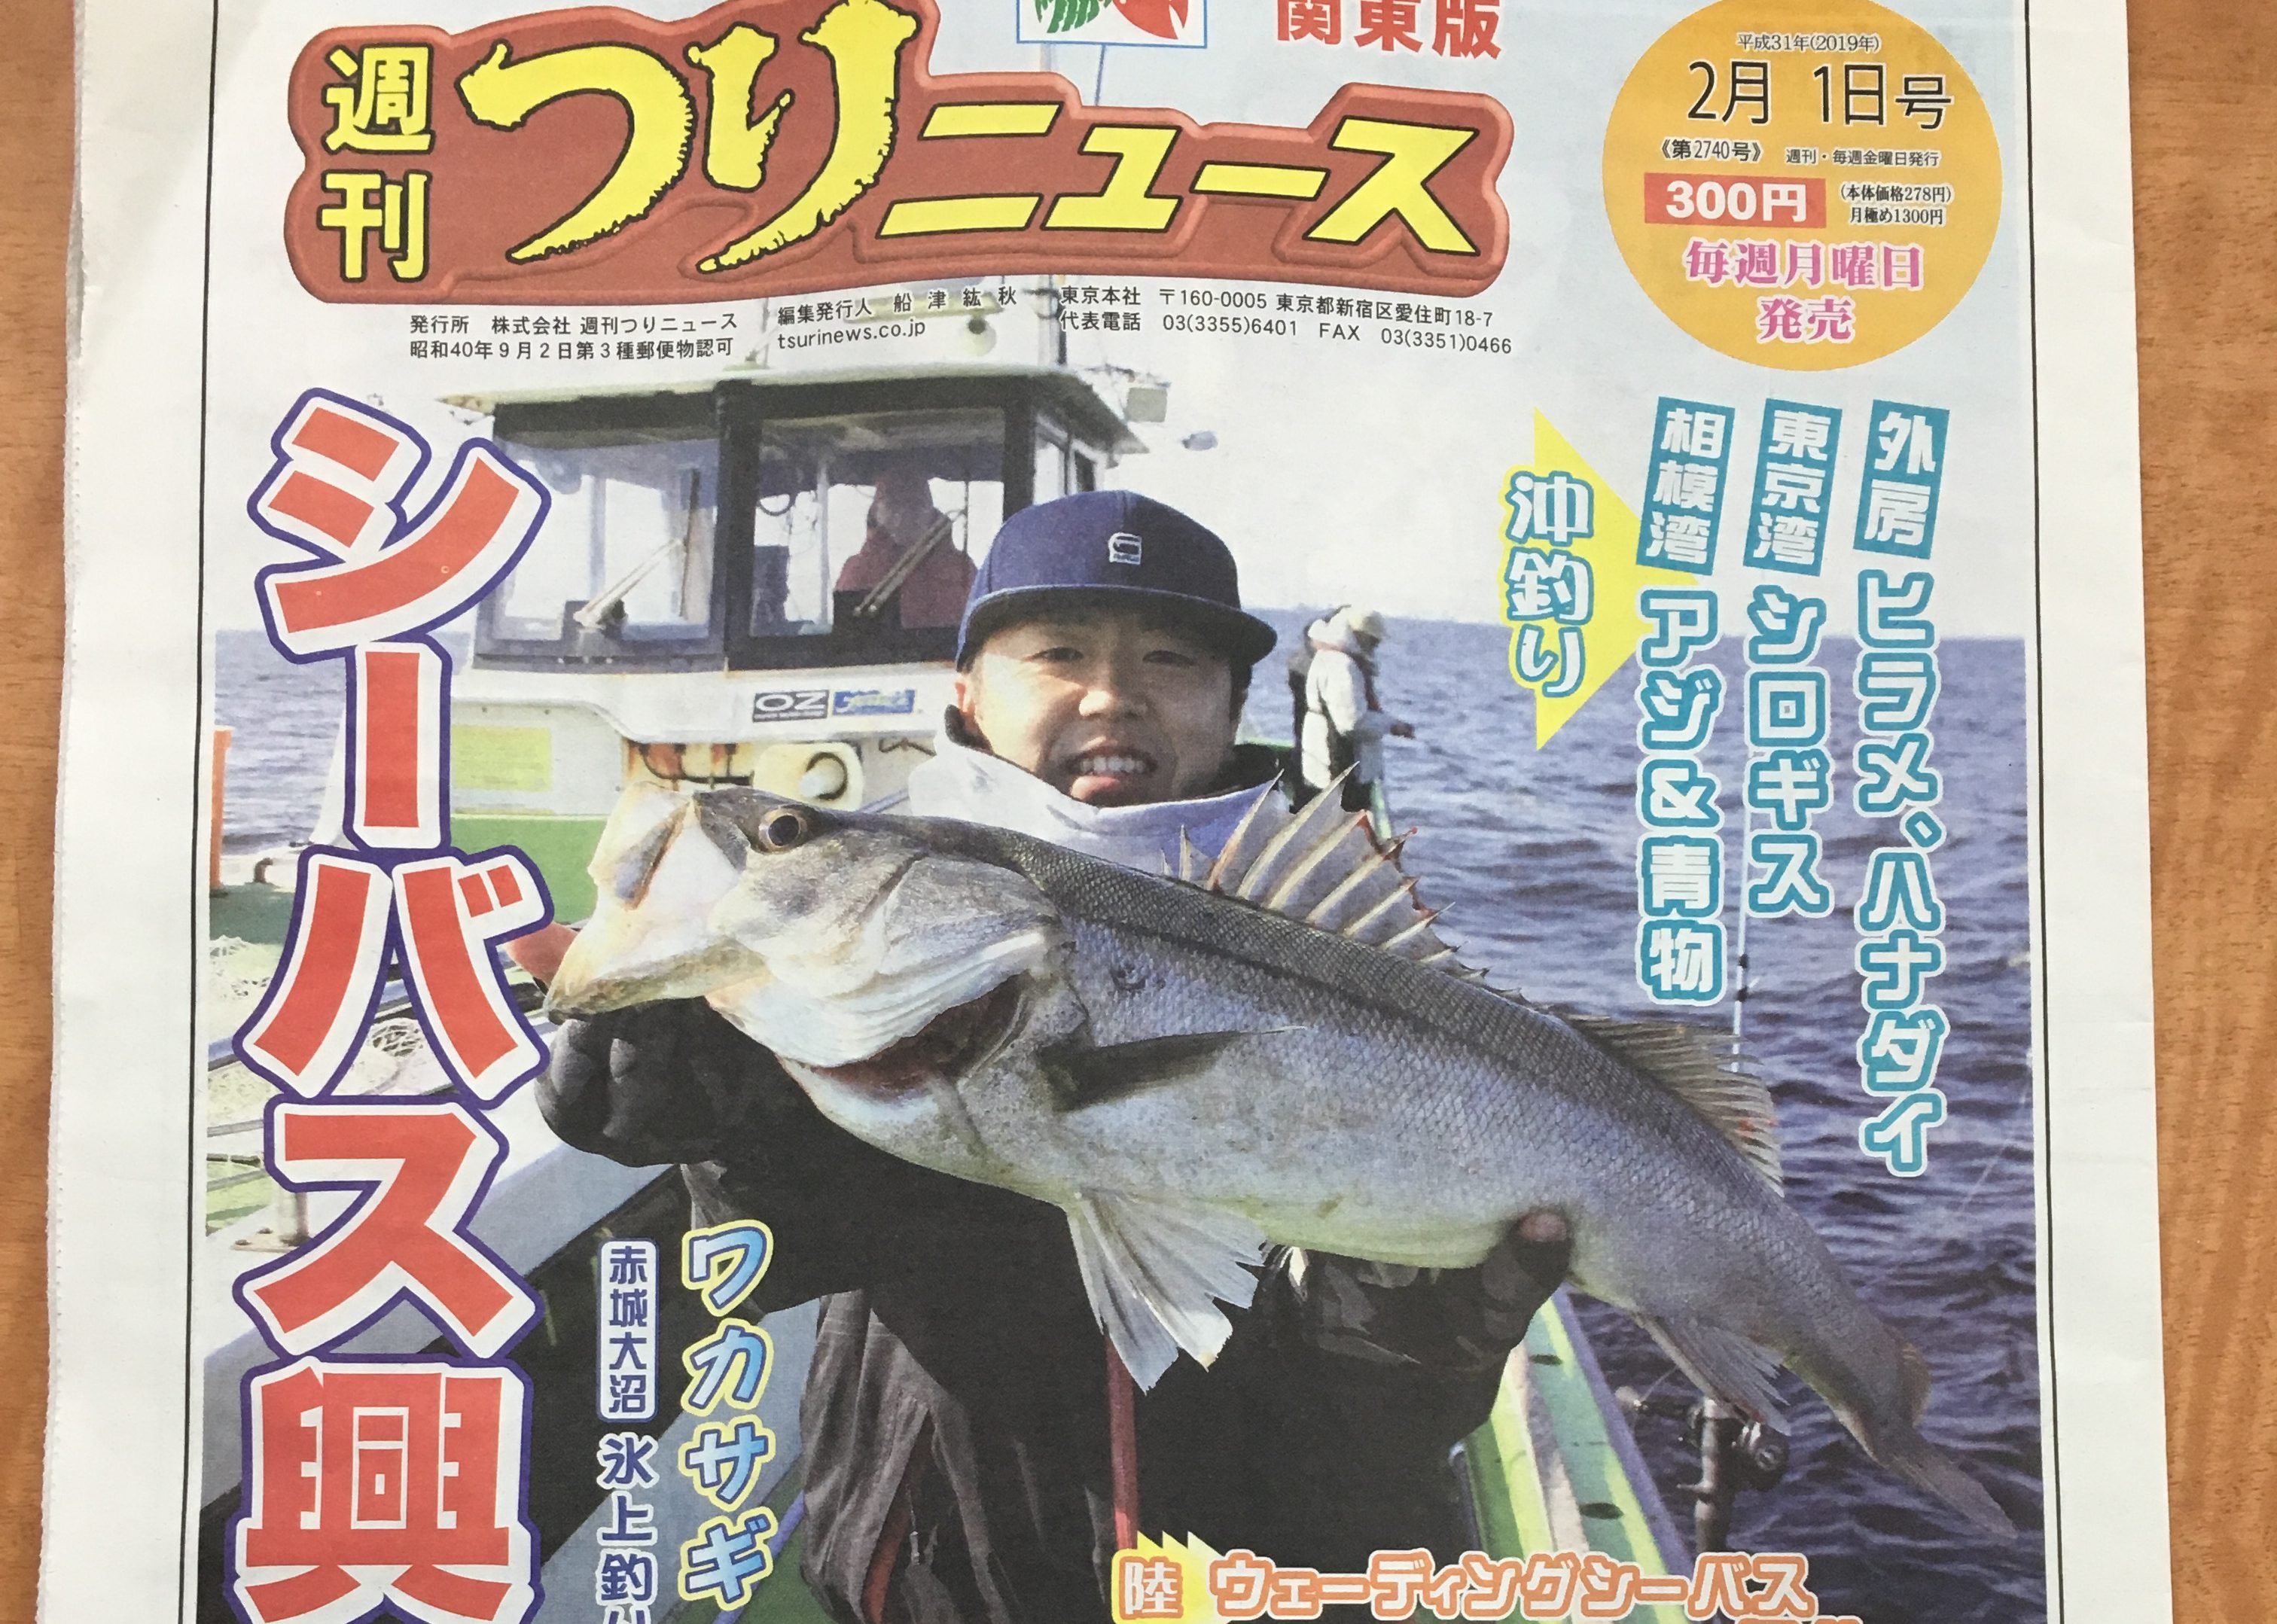 コラボルアー企画第4弾 シーバス釣行の様子が掲載!『週刊つりニュース関東版 2019年2月1日号』